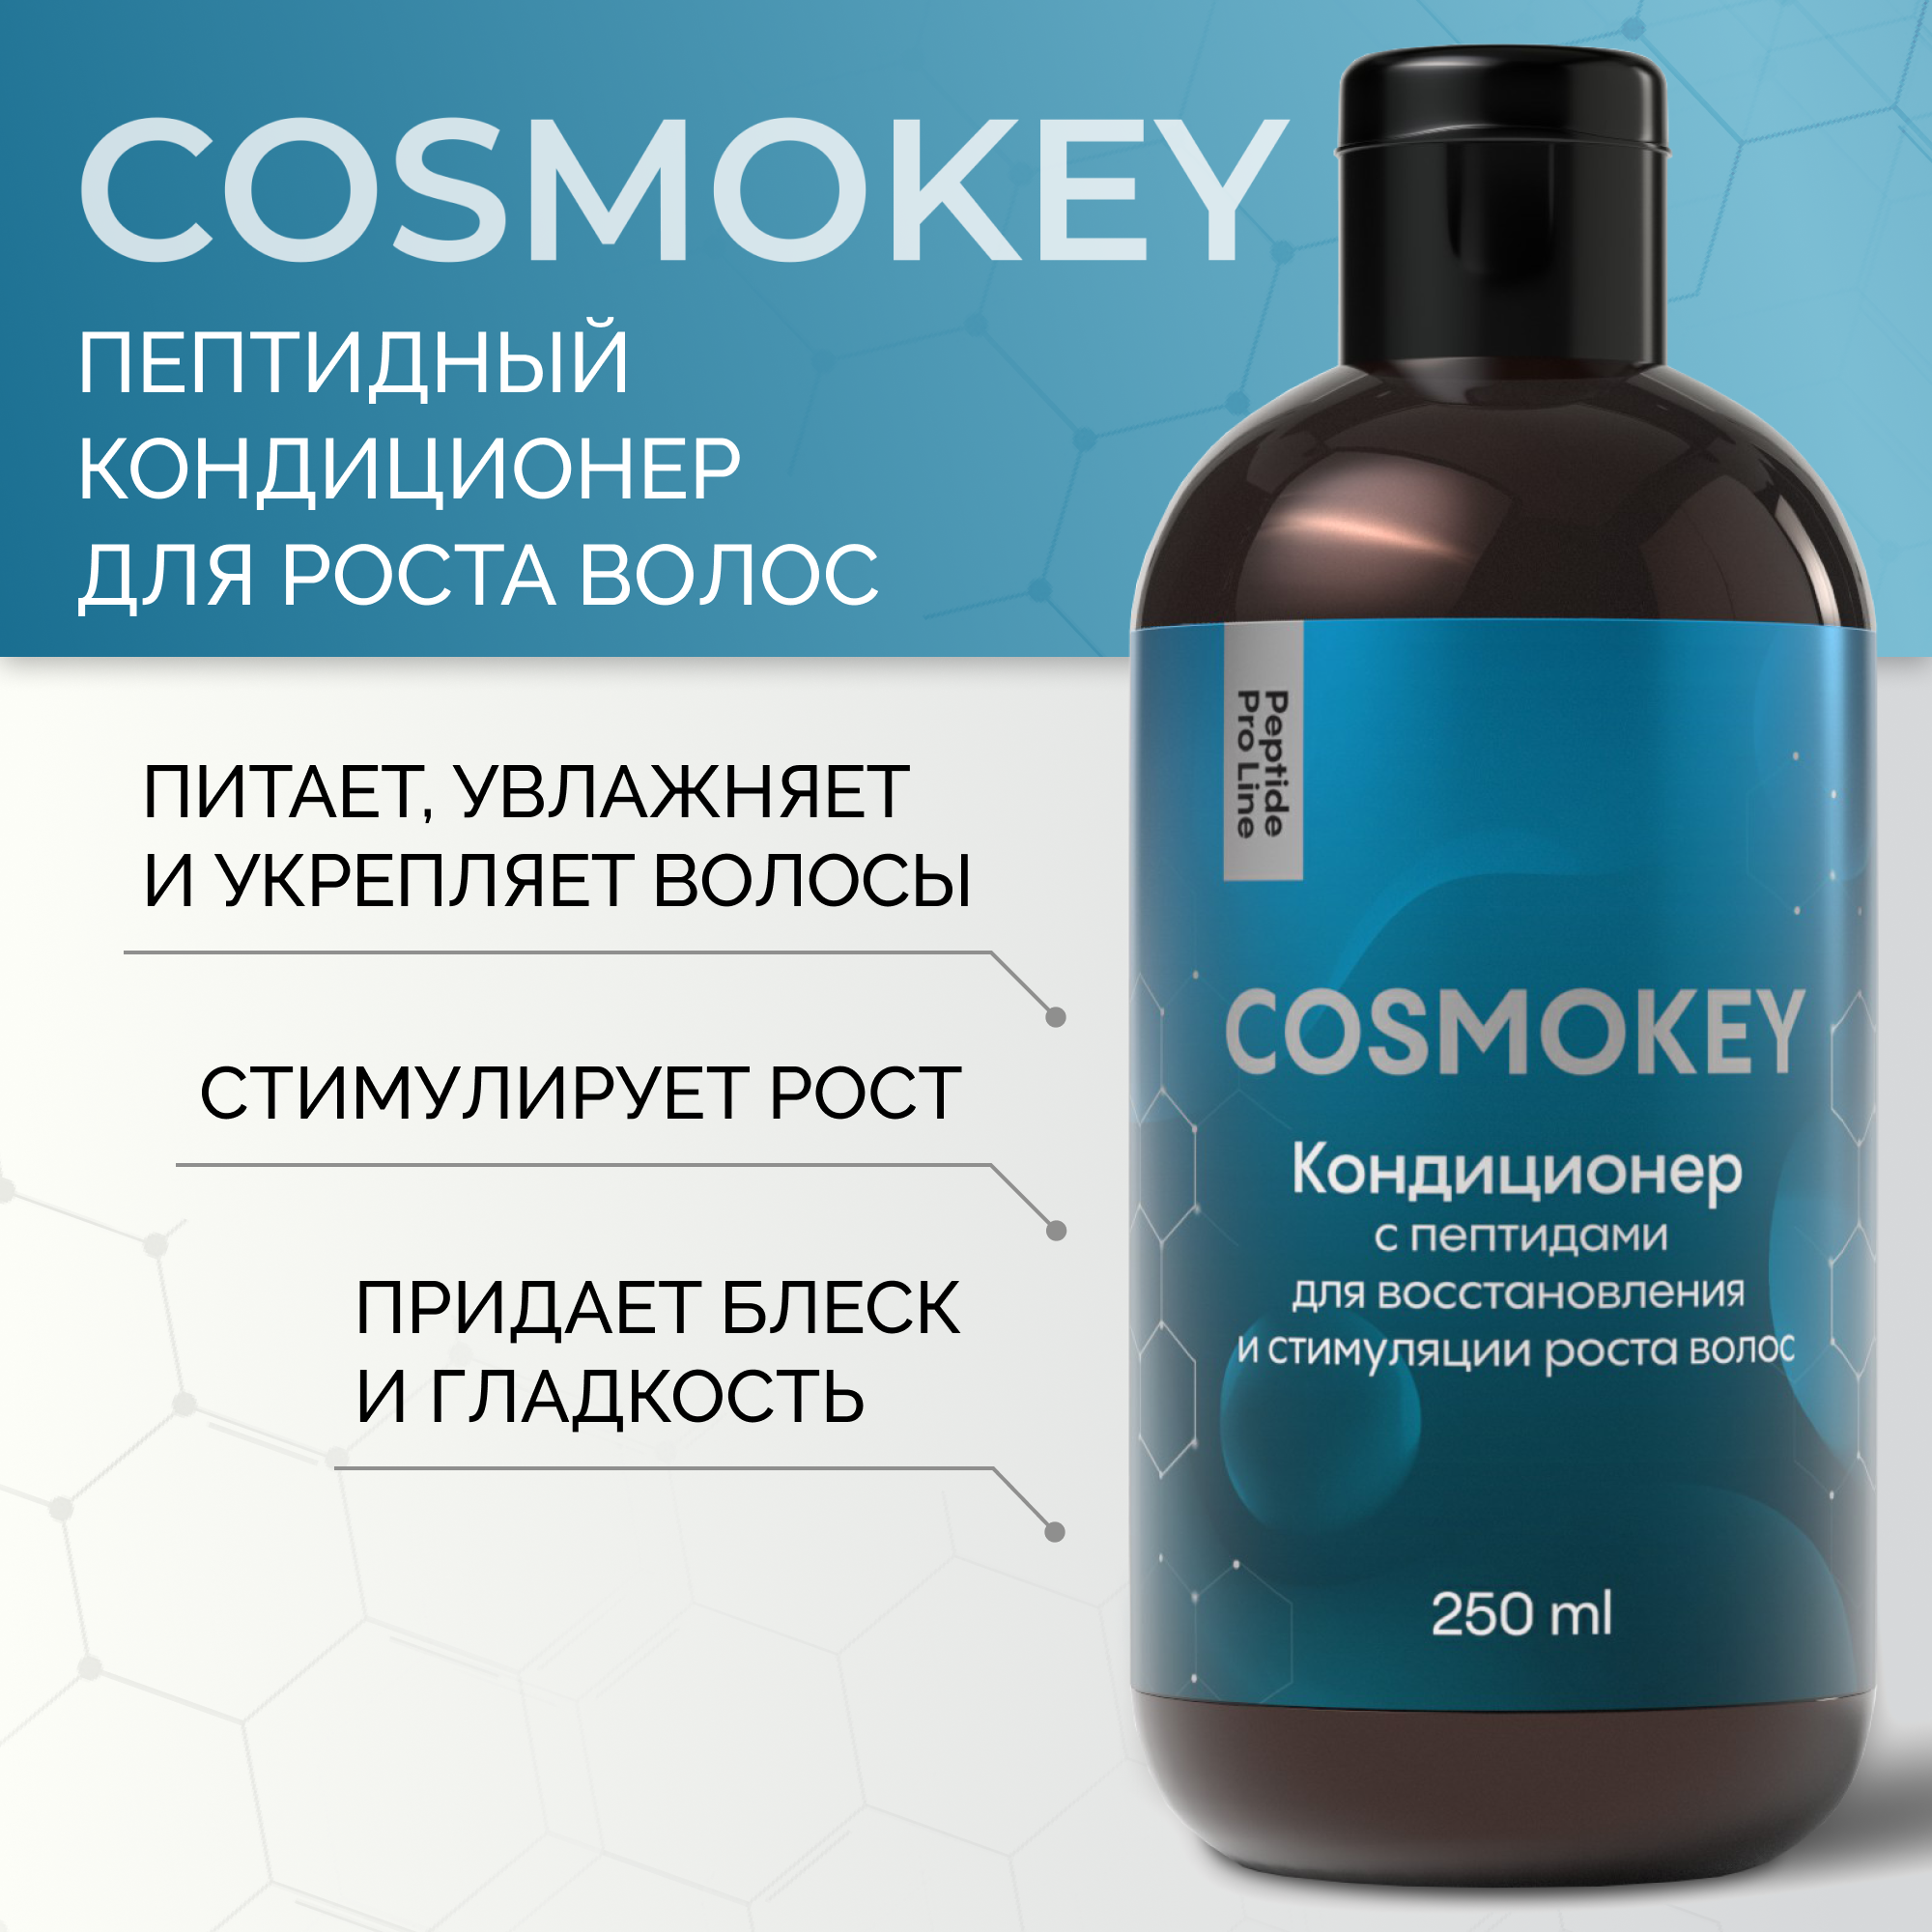 Кондиционер Cosmokey Космокей с пептидами для восстановления роста волос 250 мл